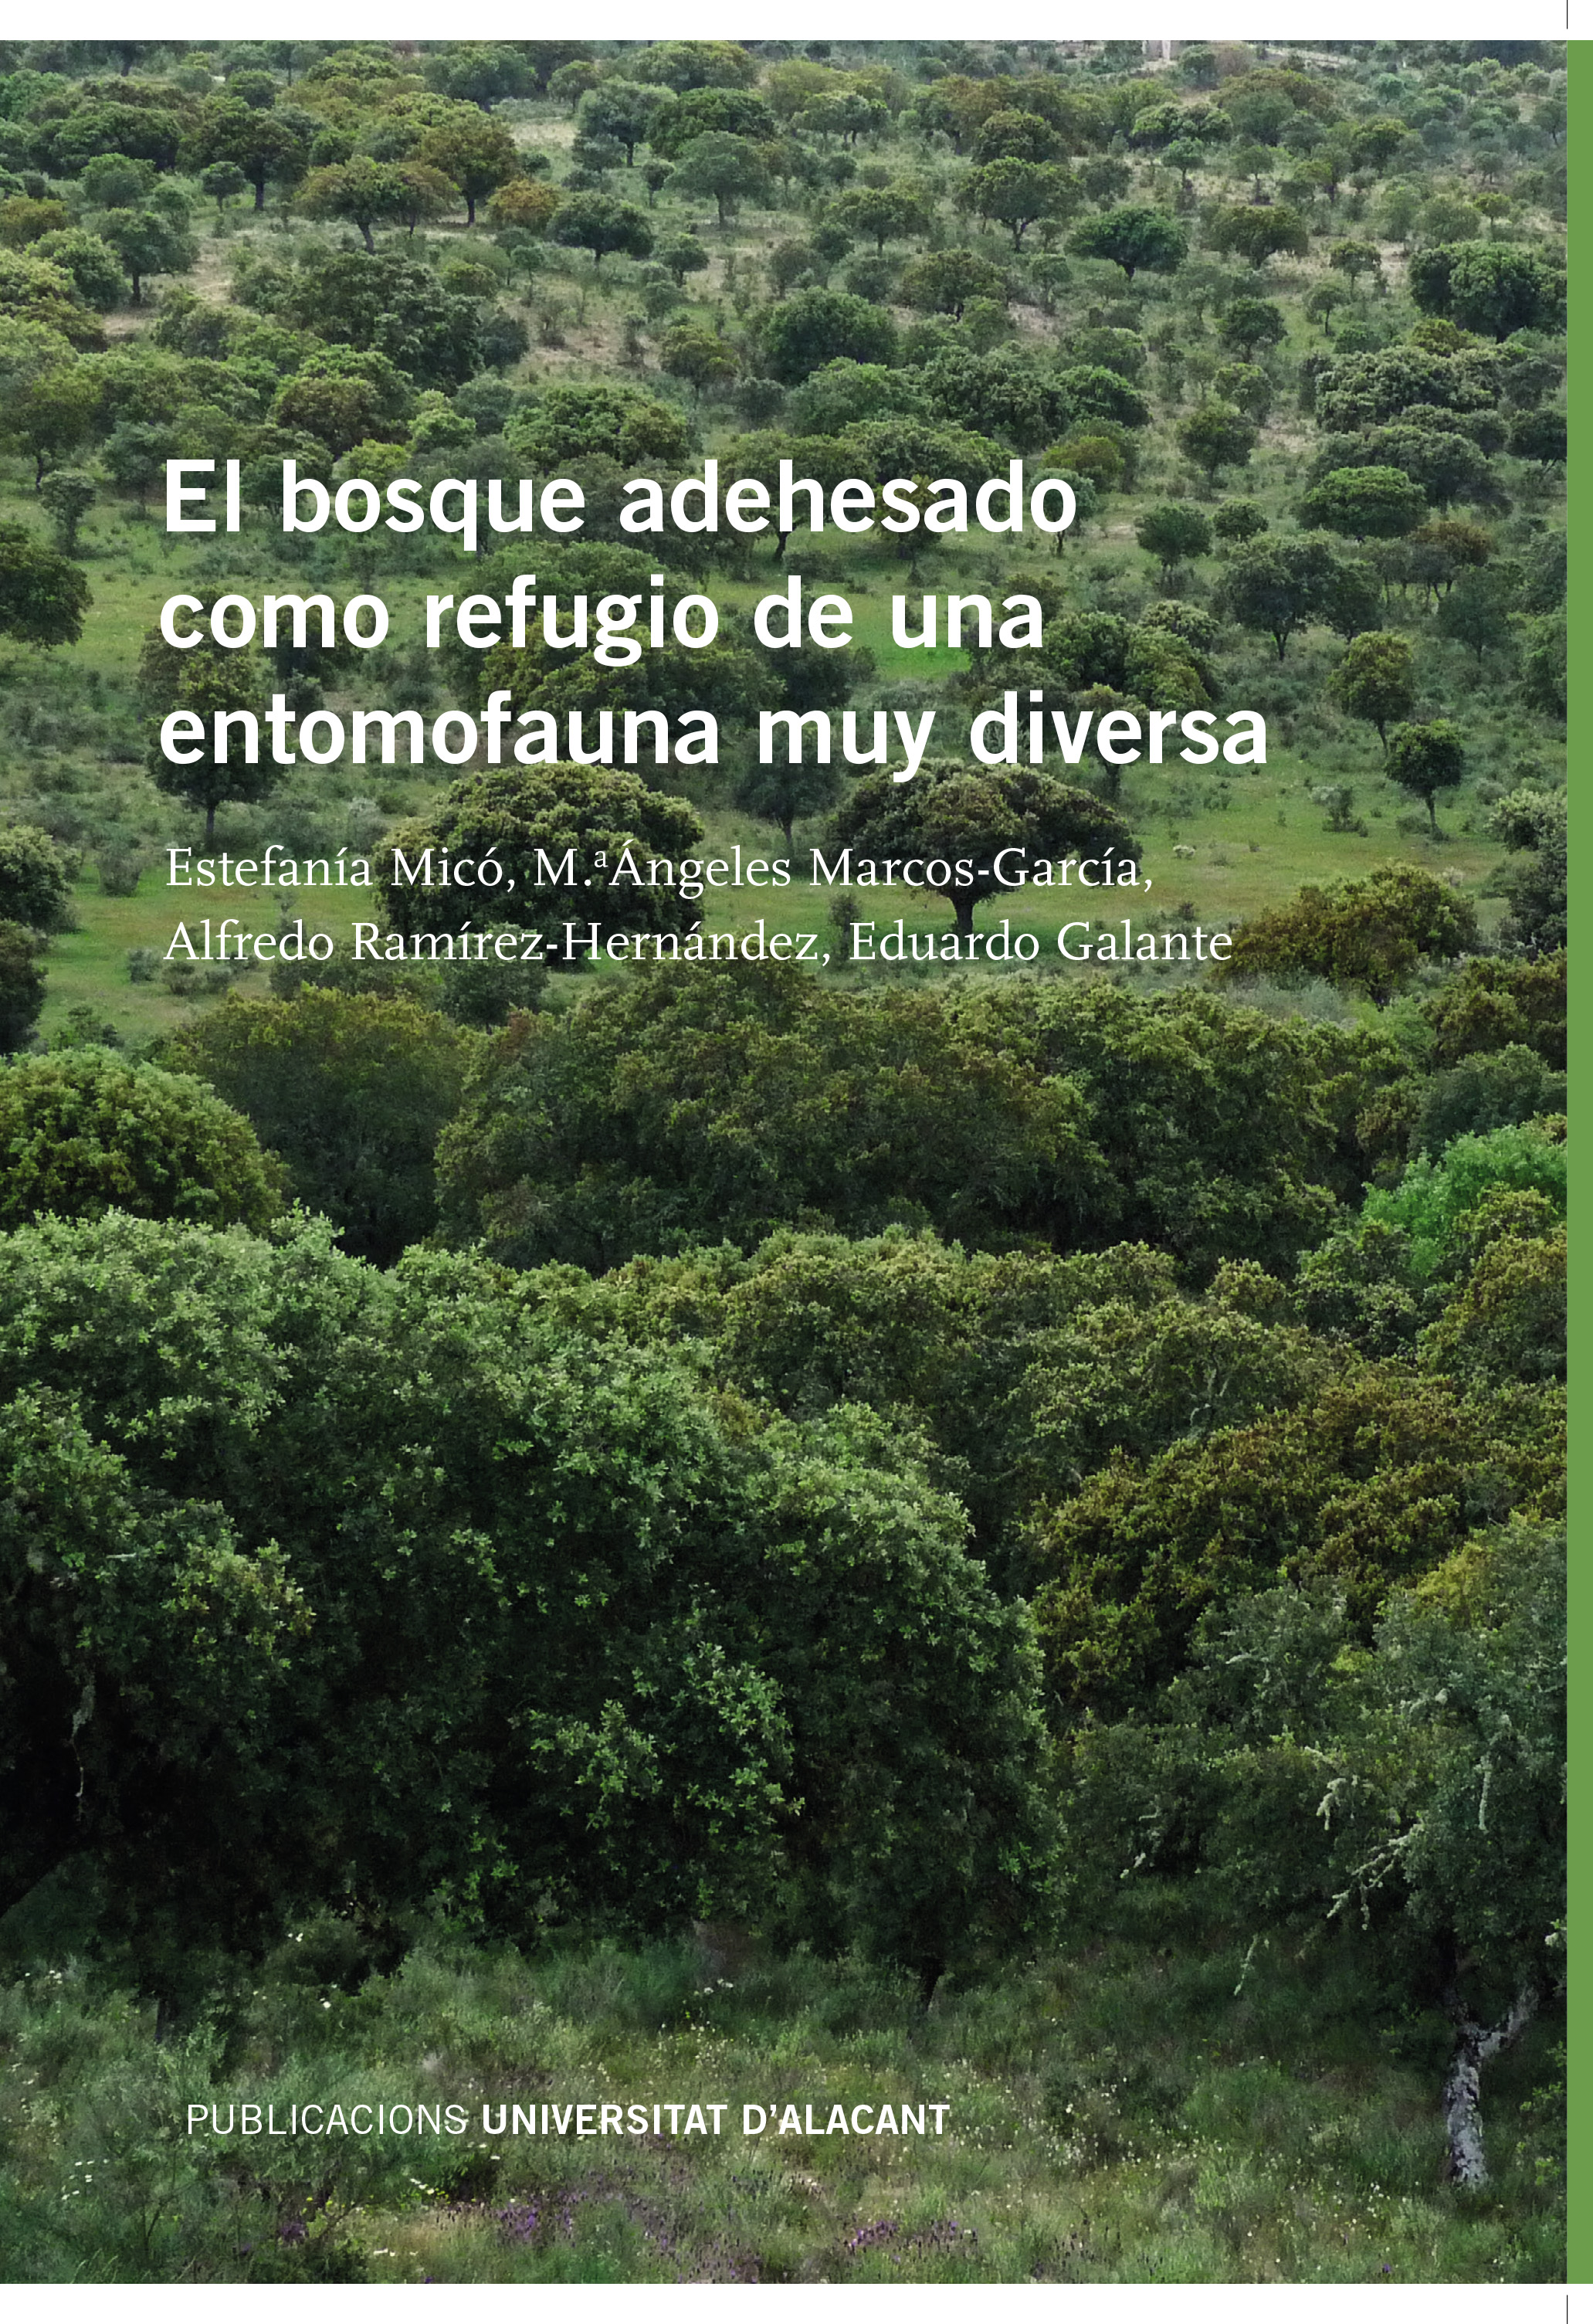 Nueva publicación: El bosque adehesado como refugio de una entomofauna muy diversa